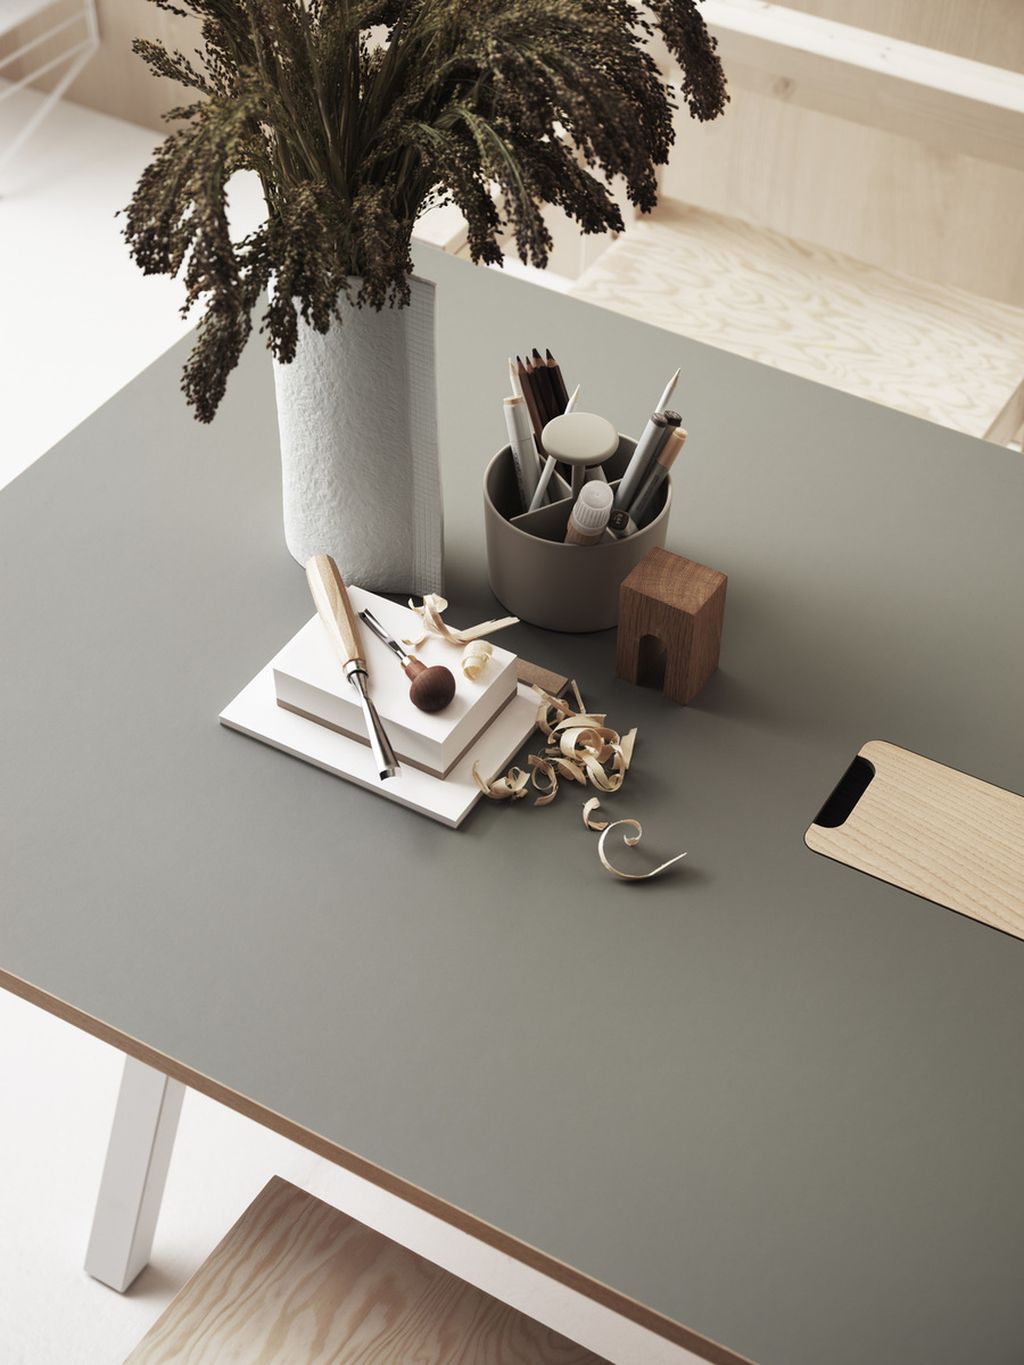 Tabla de trabajo ajustable de muebles de muebles de cuerda 78x140 cm, linóleo gris claro